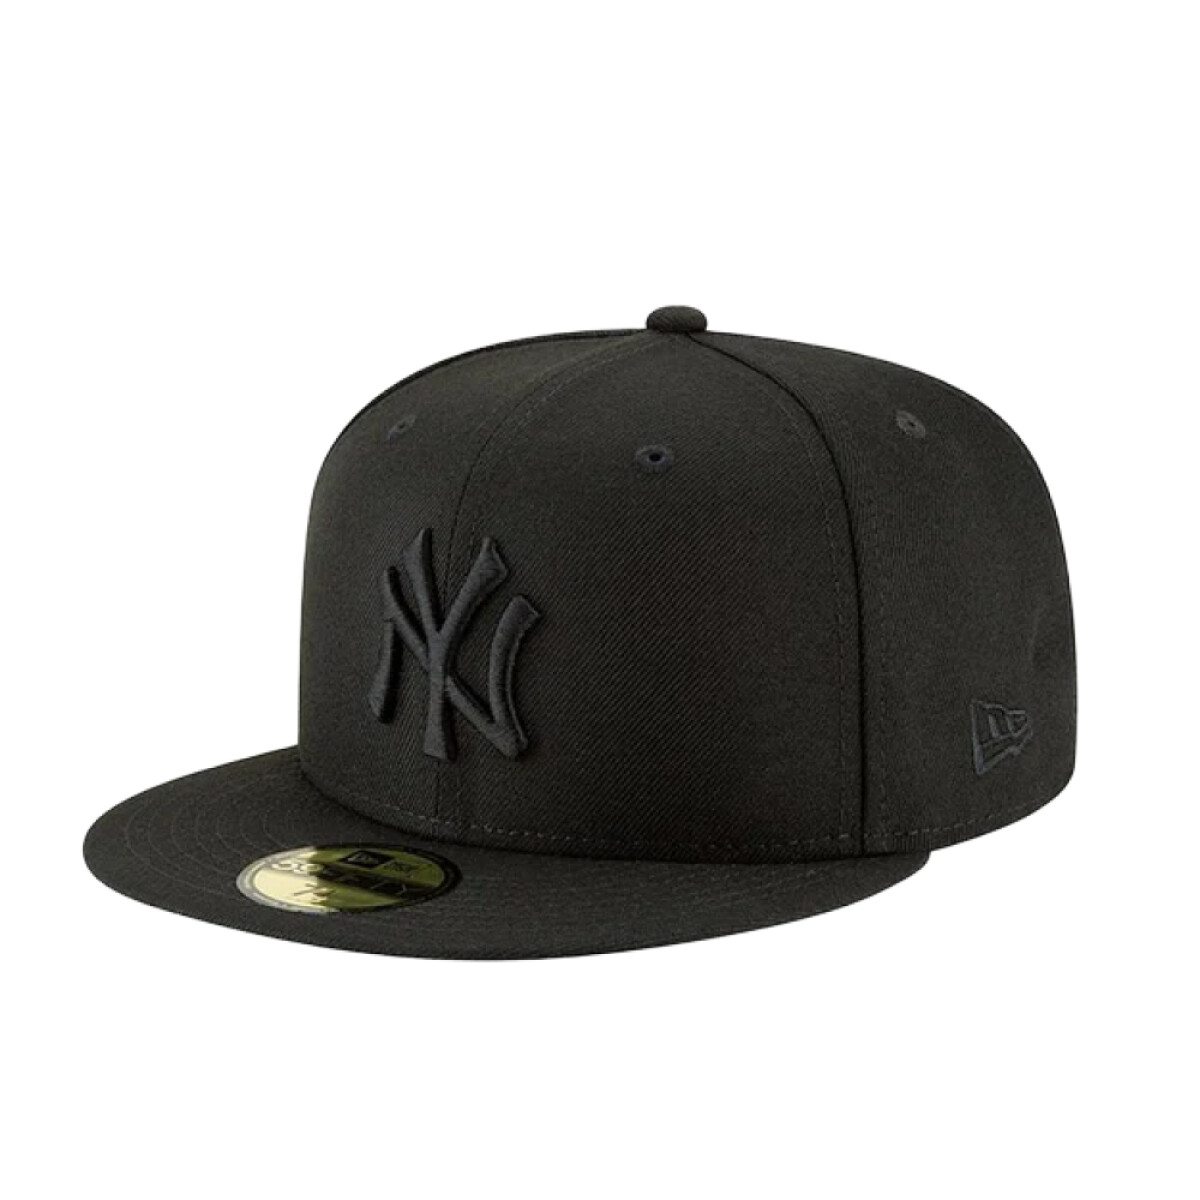 Gorro New Era New York Yankees 9Fifty 